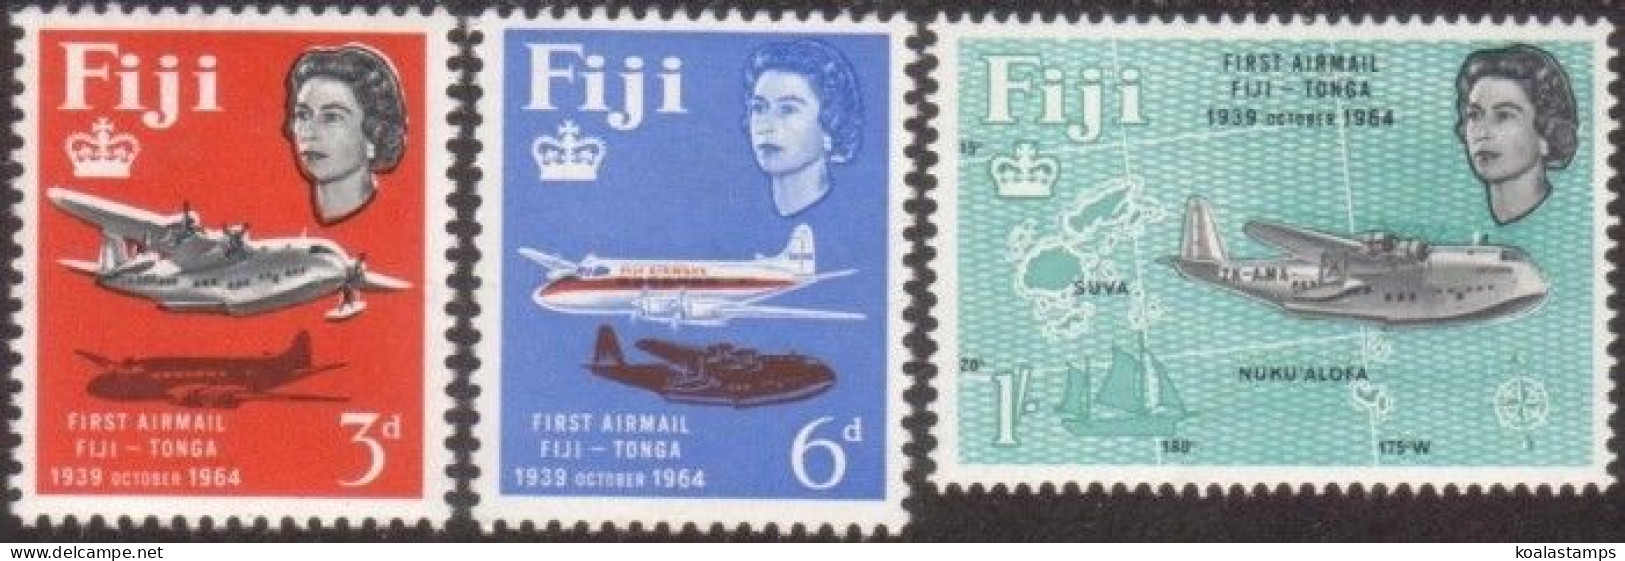 Fiji 1964 SG338-340 Fiji-Tonga Airmail Service QEII Set MNH - Fiji (1970-...)